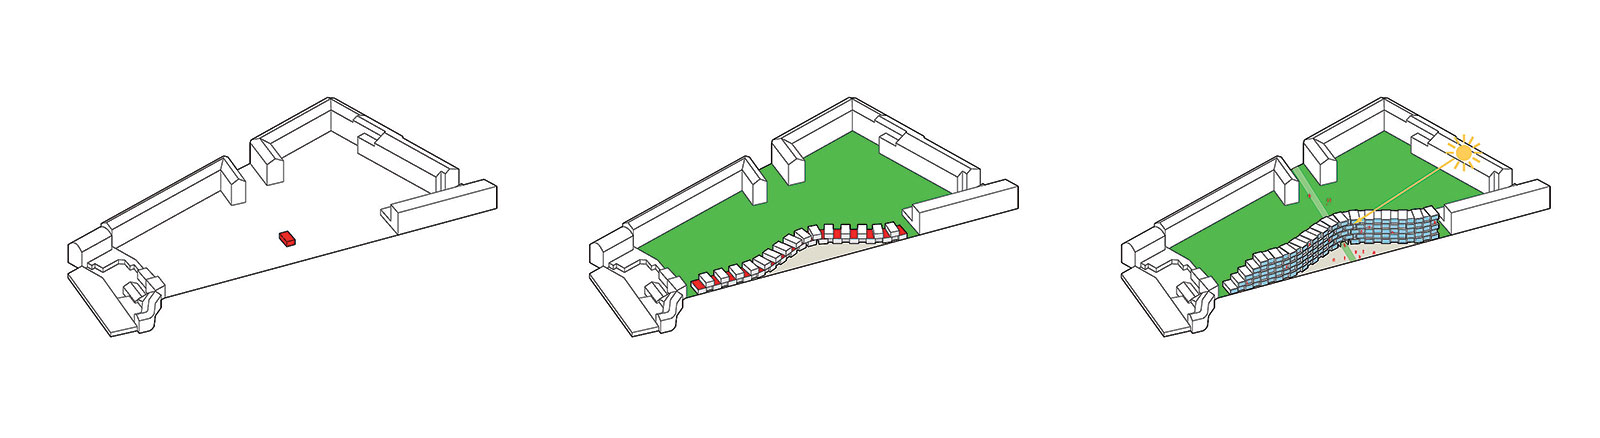 Schéma umiestnenia prefabrikovaných jednotiek ako kontrast k blokovej zástavbe